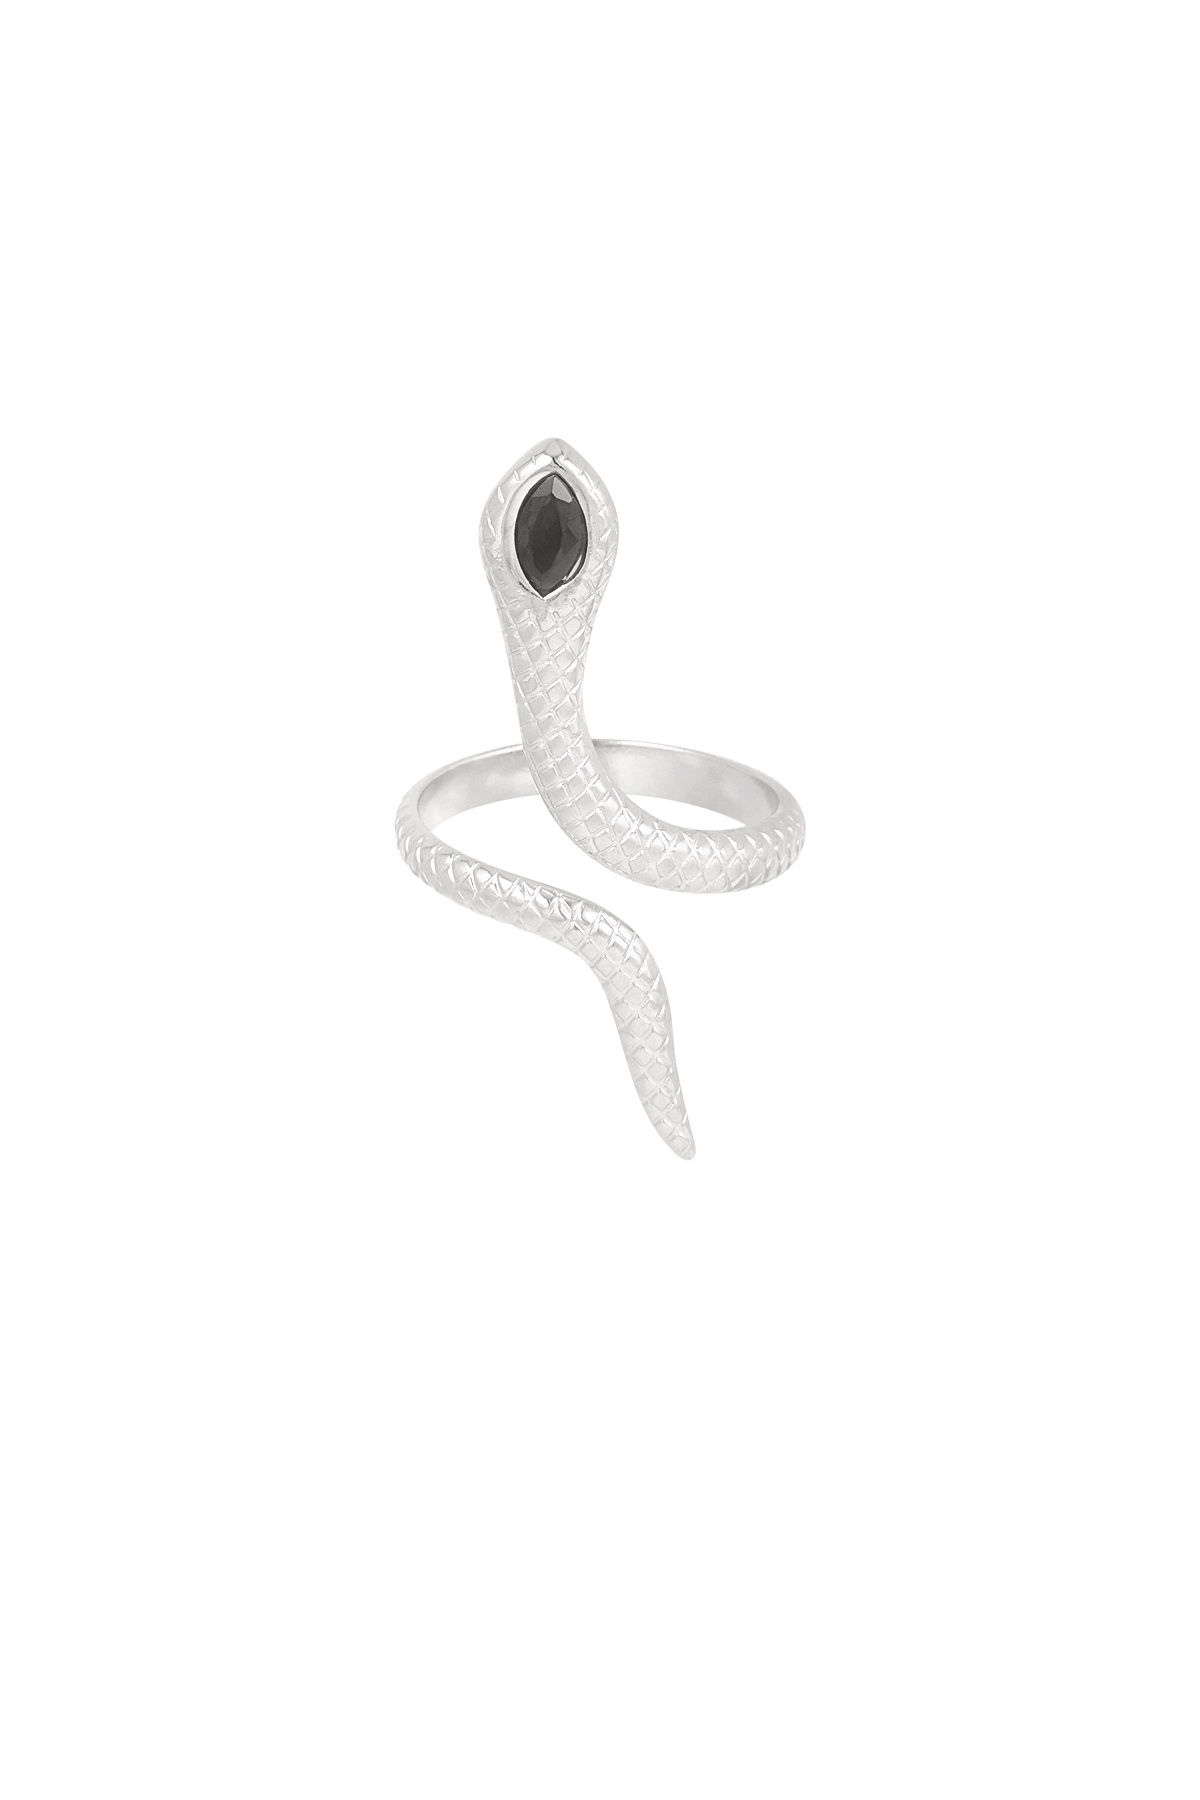 Zwarte slang ring - zilver 